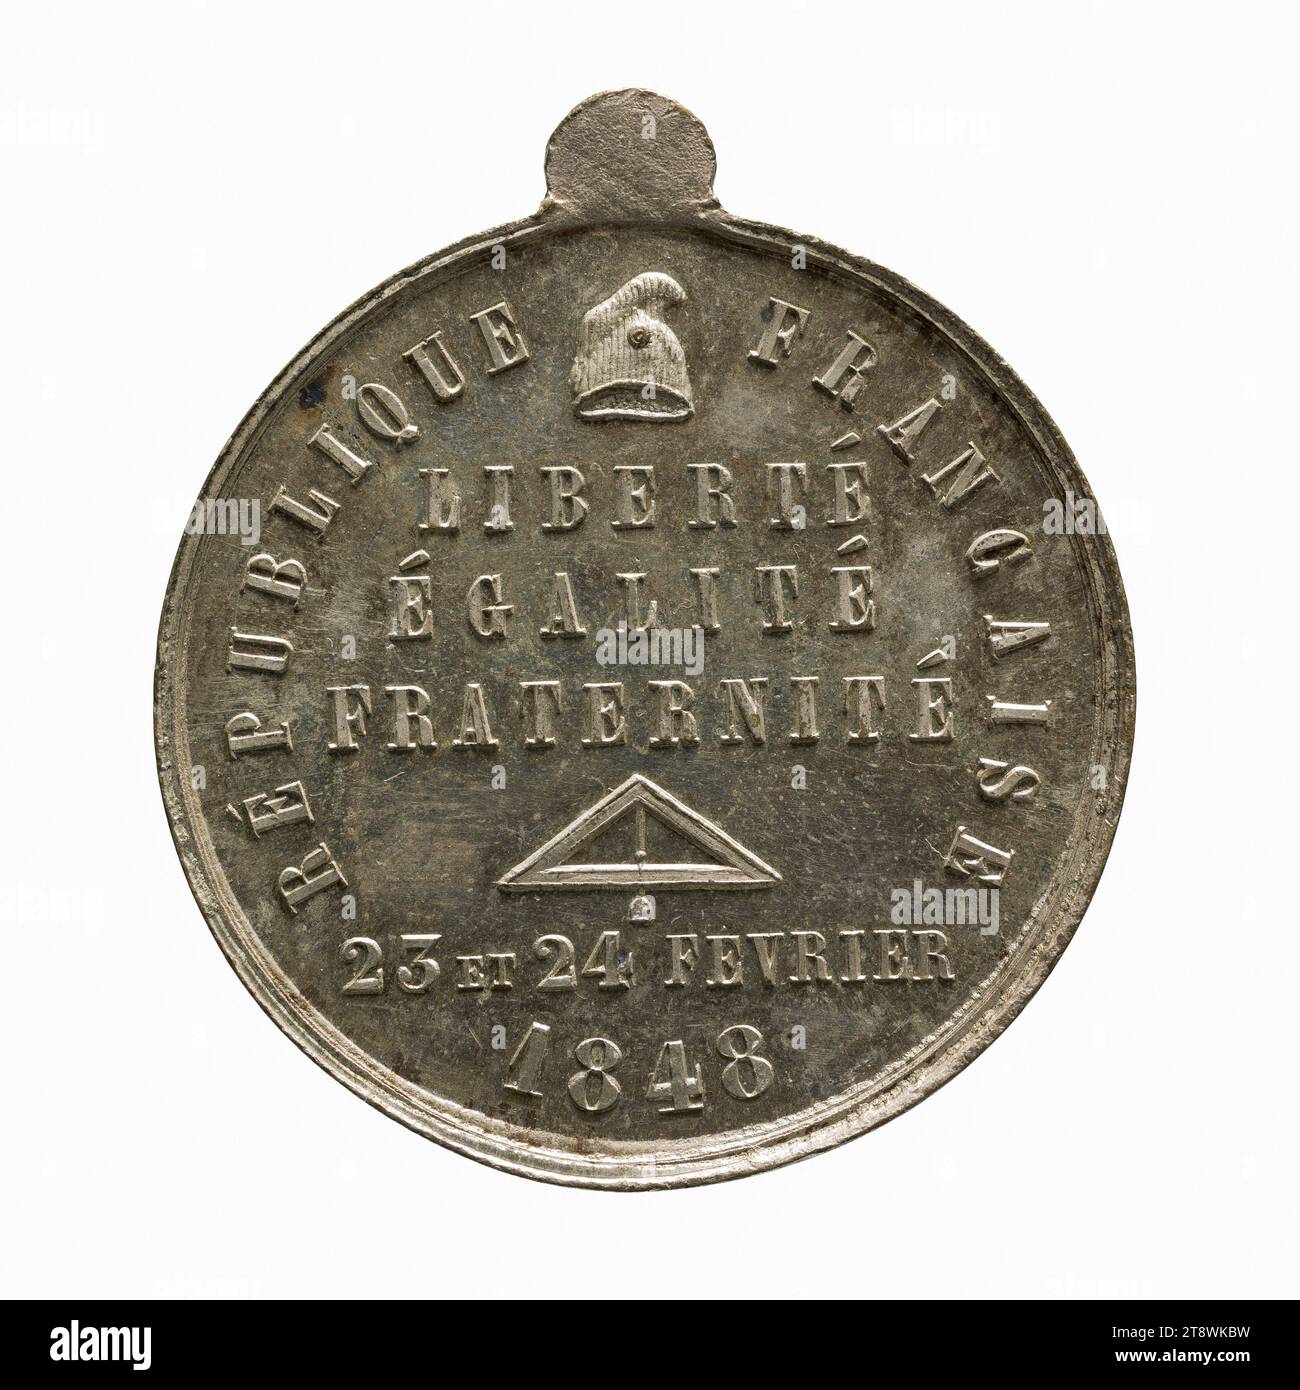 Giorni del 23 e 24 febbraio 1848, Richard, incisore in medaglie, Array, Numismatic, Medal, Paris, diametro: 3,5 cm, peso (tipo dimensione): 19,09 g. Foto Stock